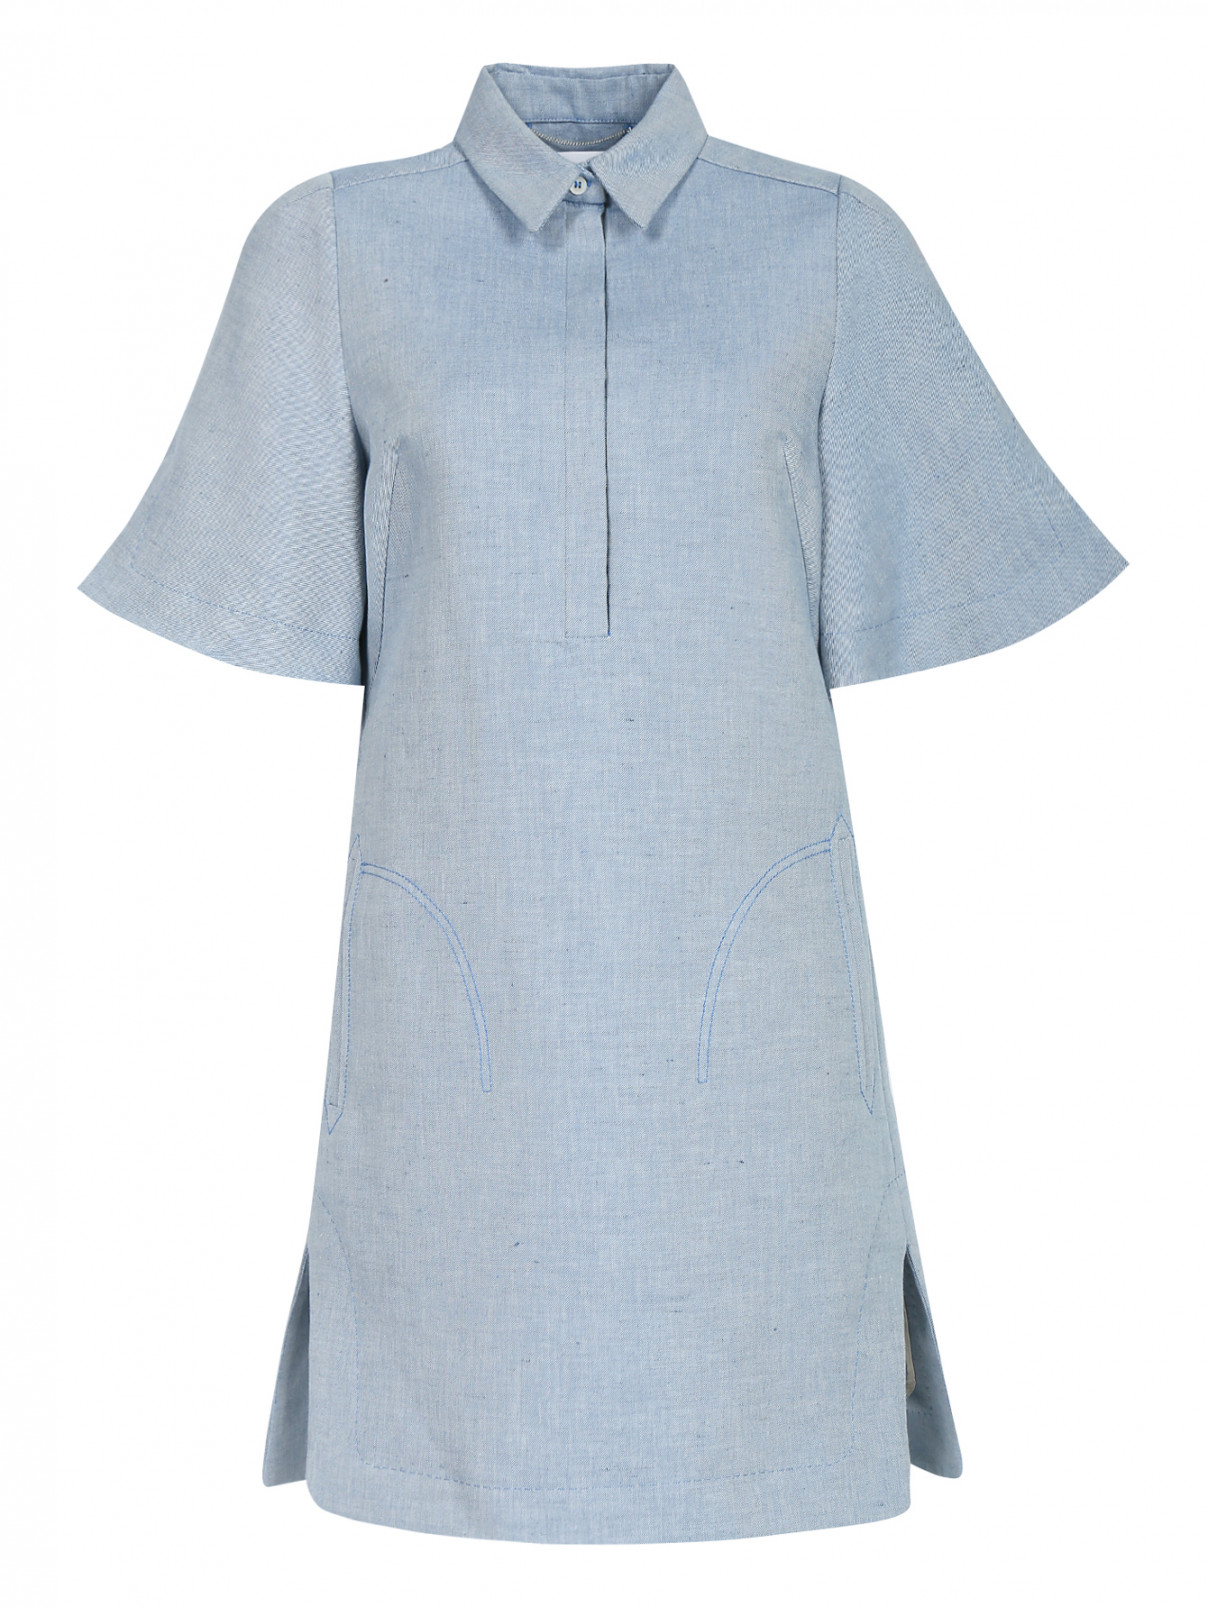 Платье-мини из хлопка и льна с карманами Carven  –  Общий вид  – Цвет:  Синий